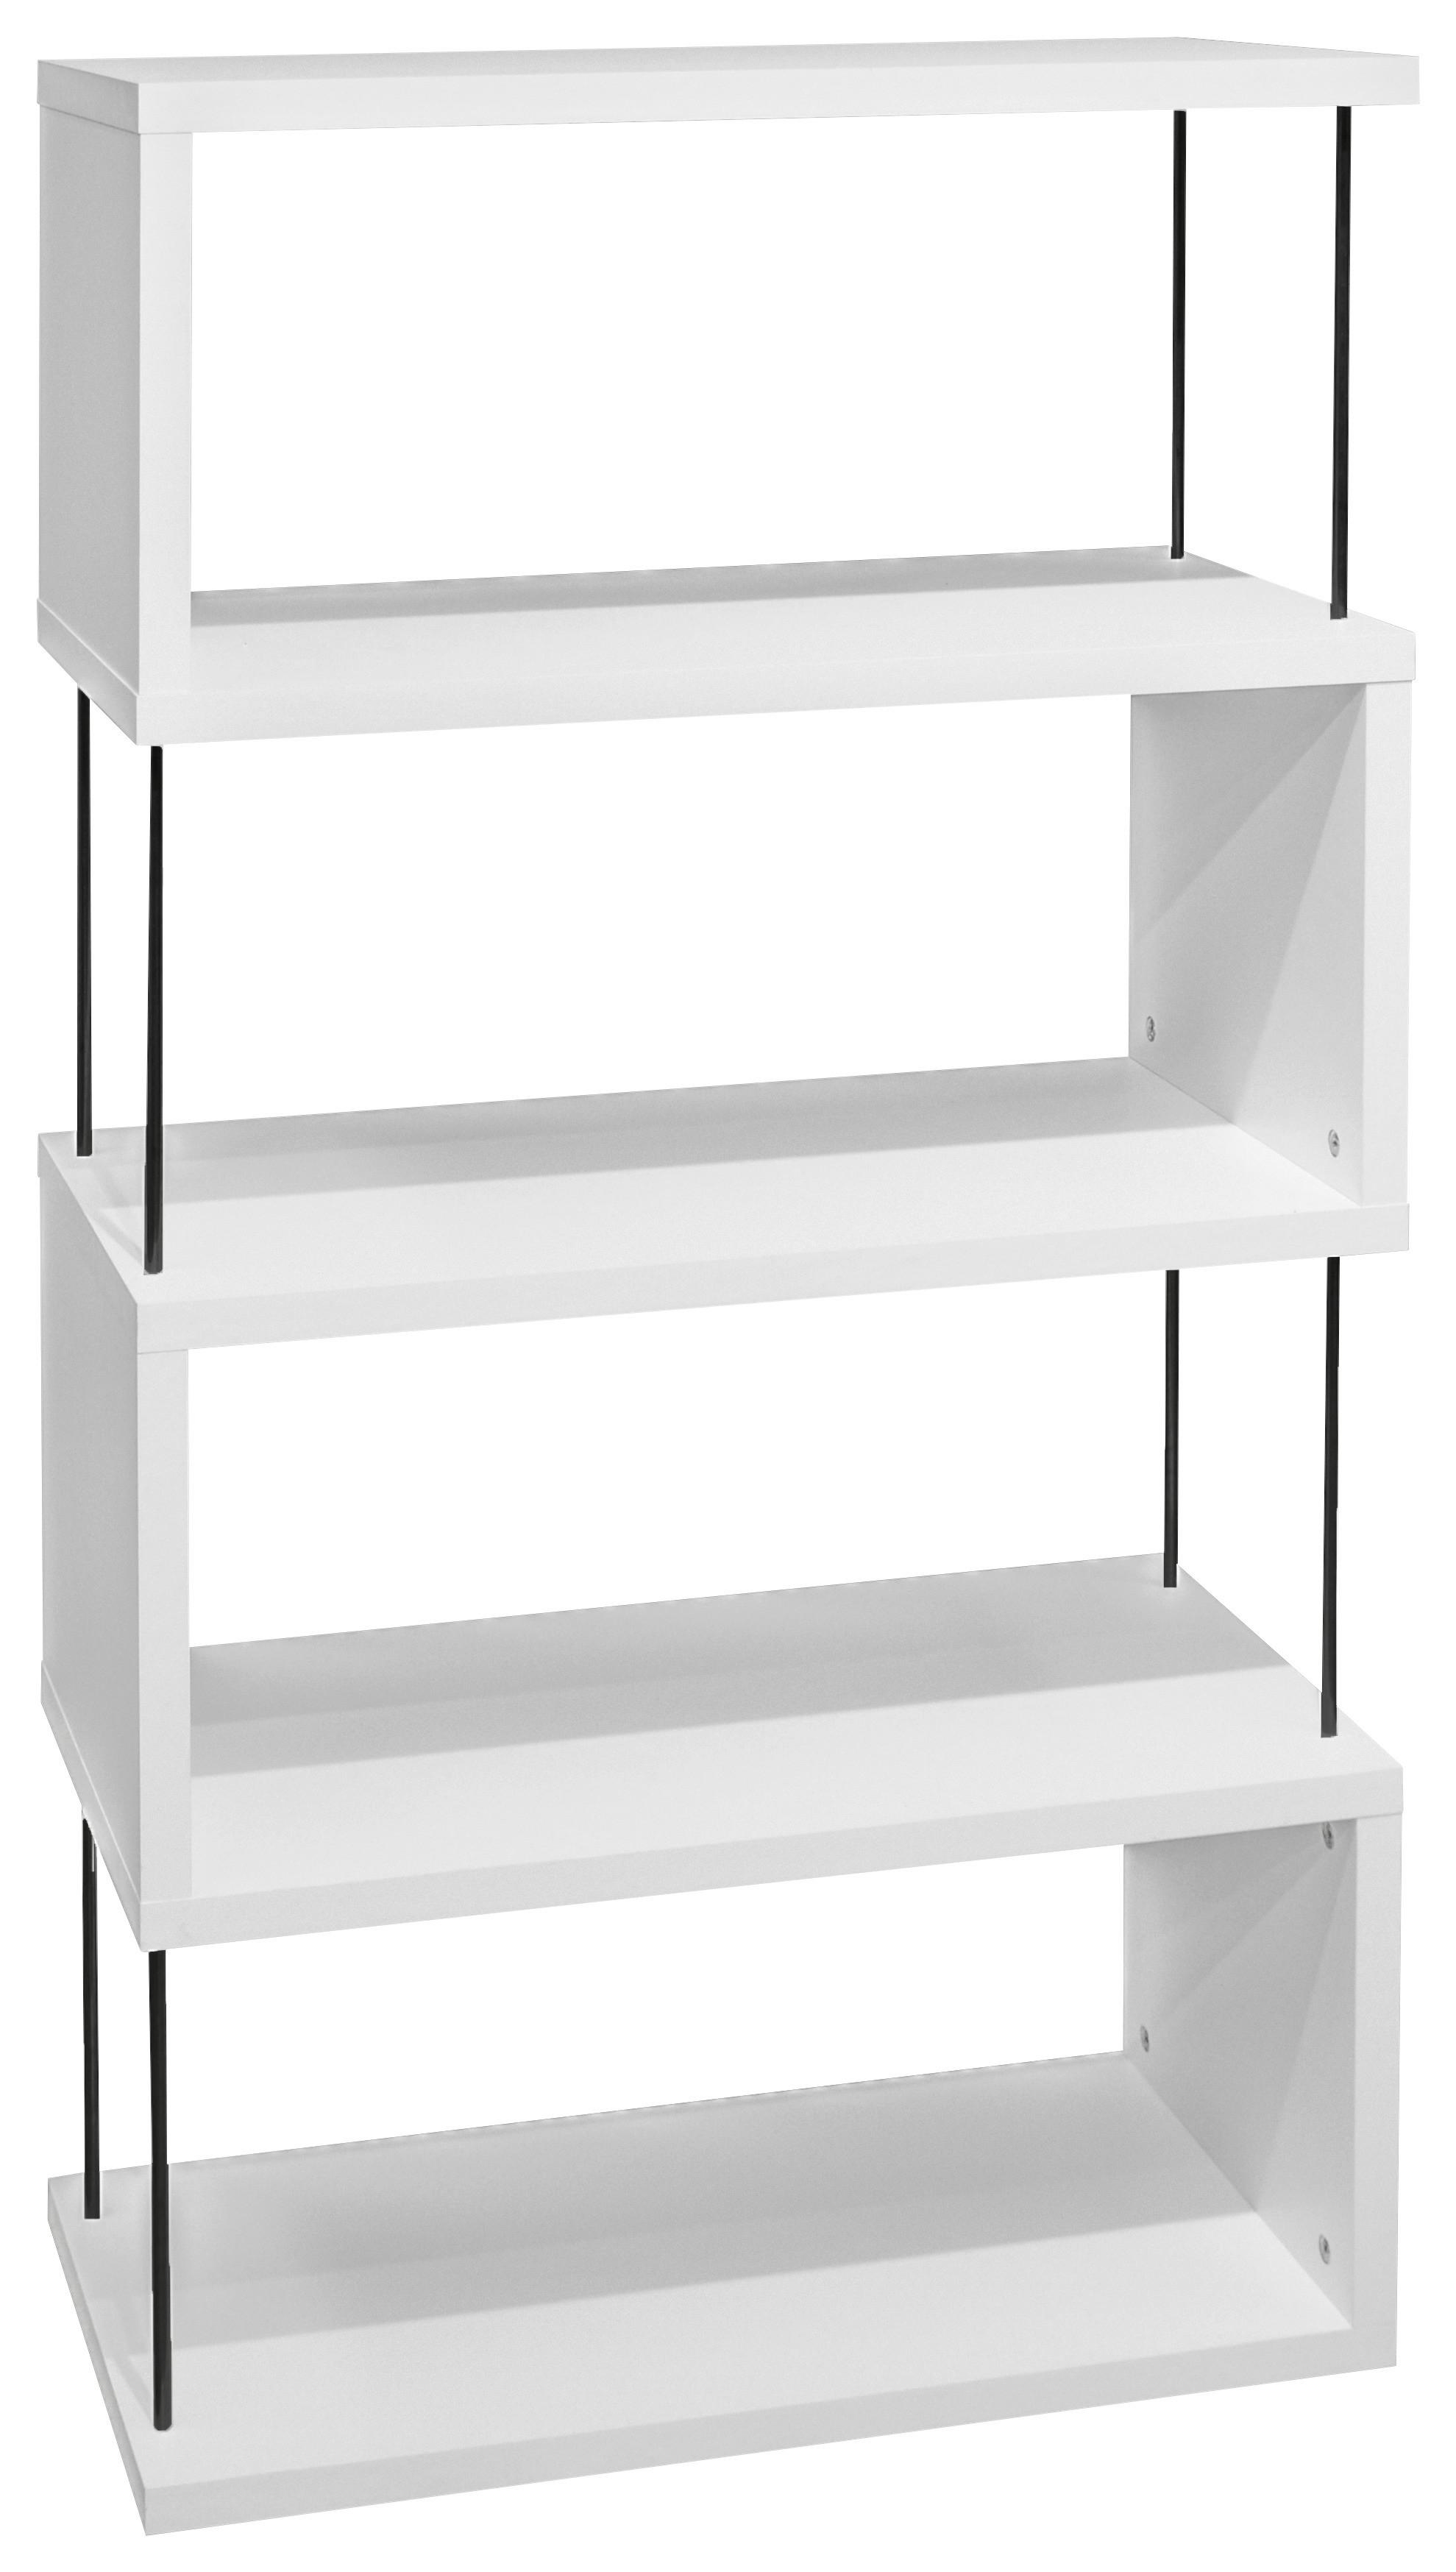 Samostojeći Regal Sticks - bijela/crna, Modern, drvni materijal/plastika (66/126/33cm) - Modern Living